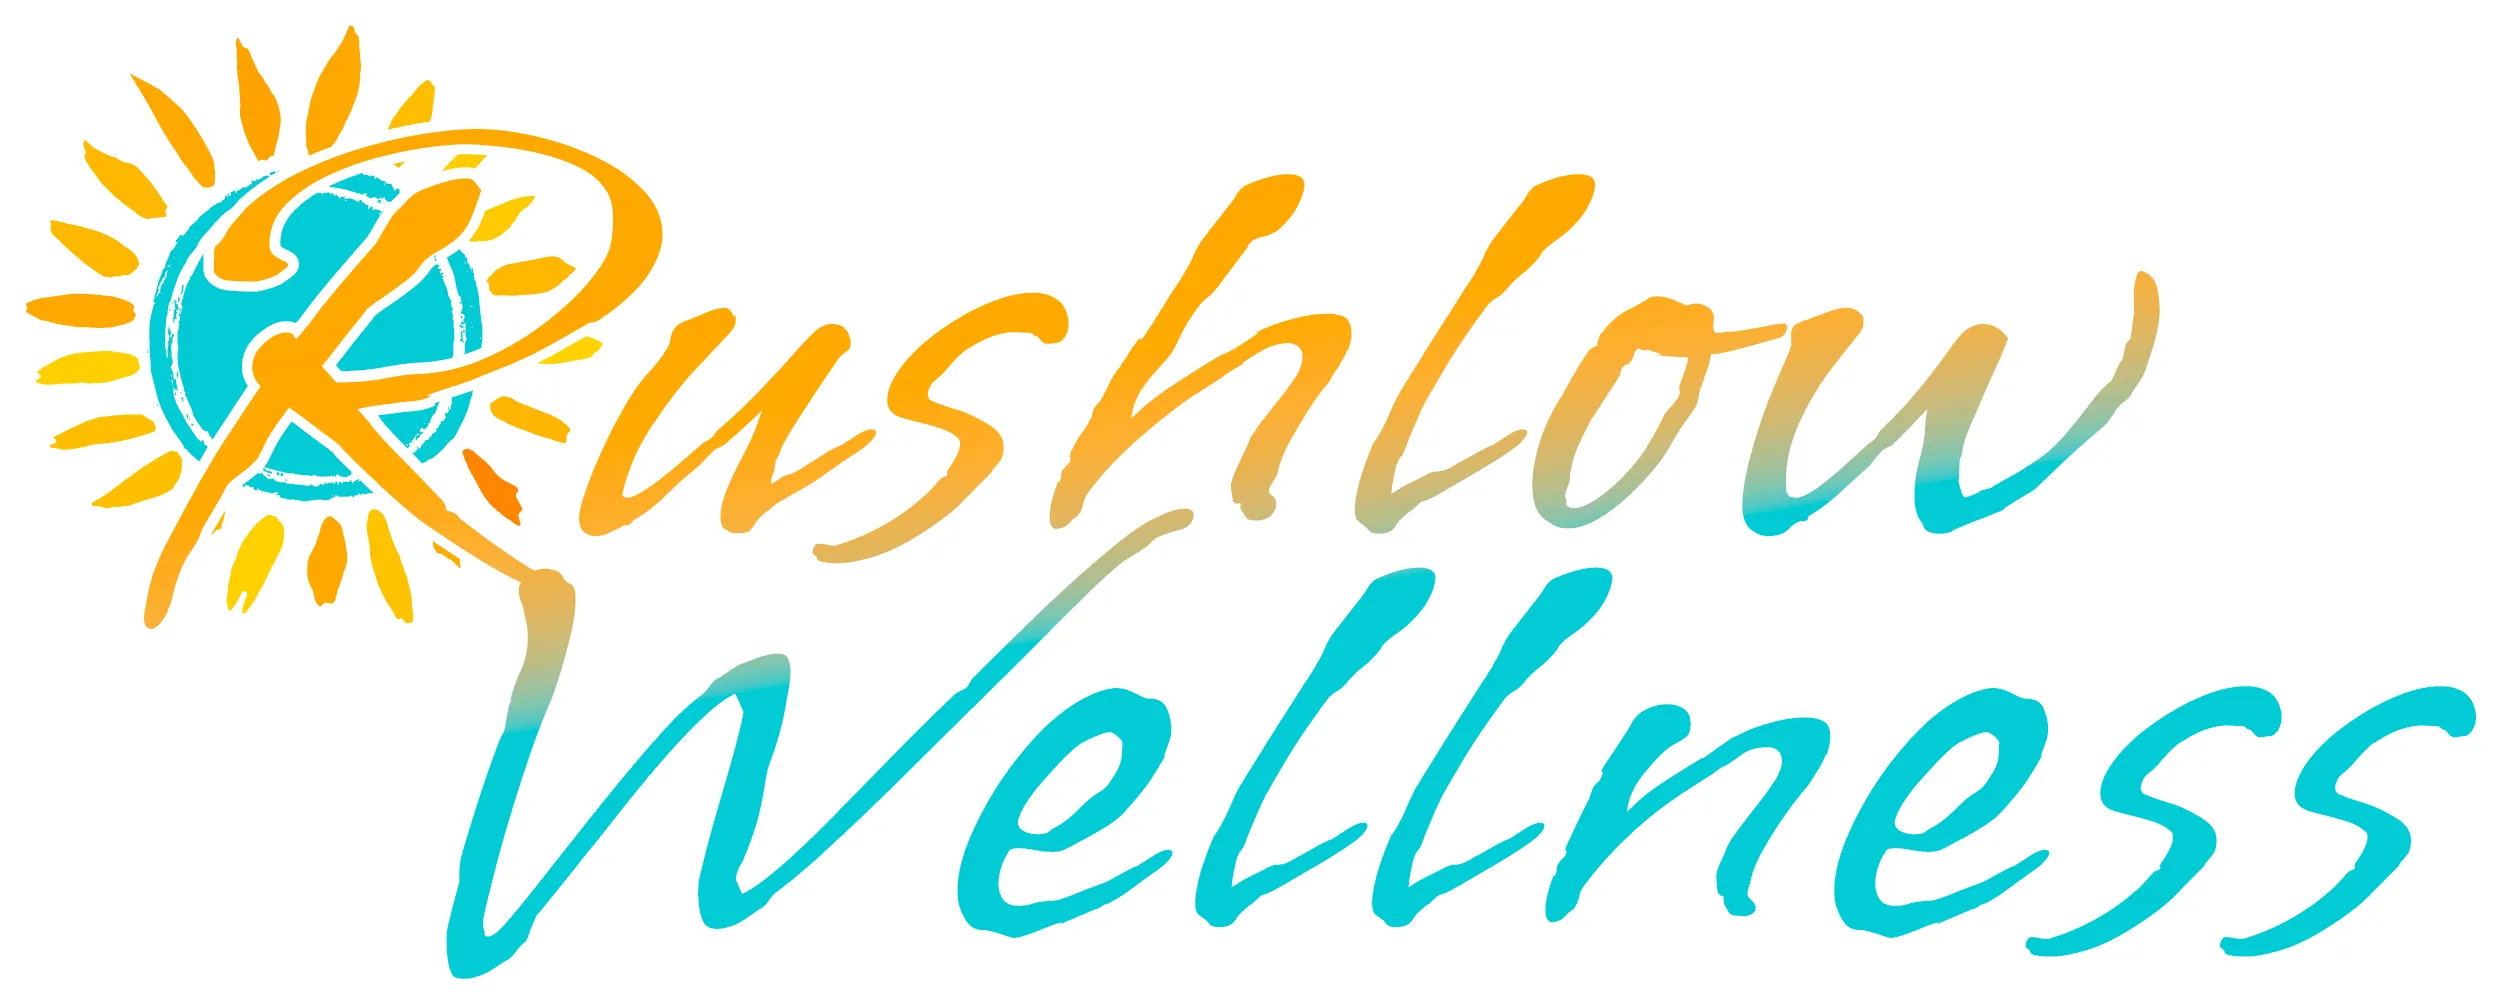 rushlow wellness logo